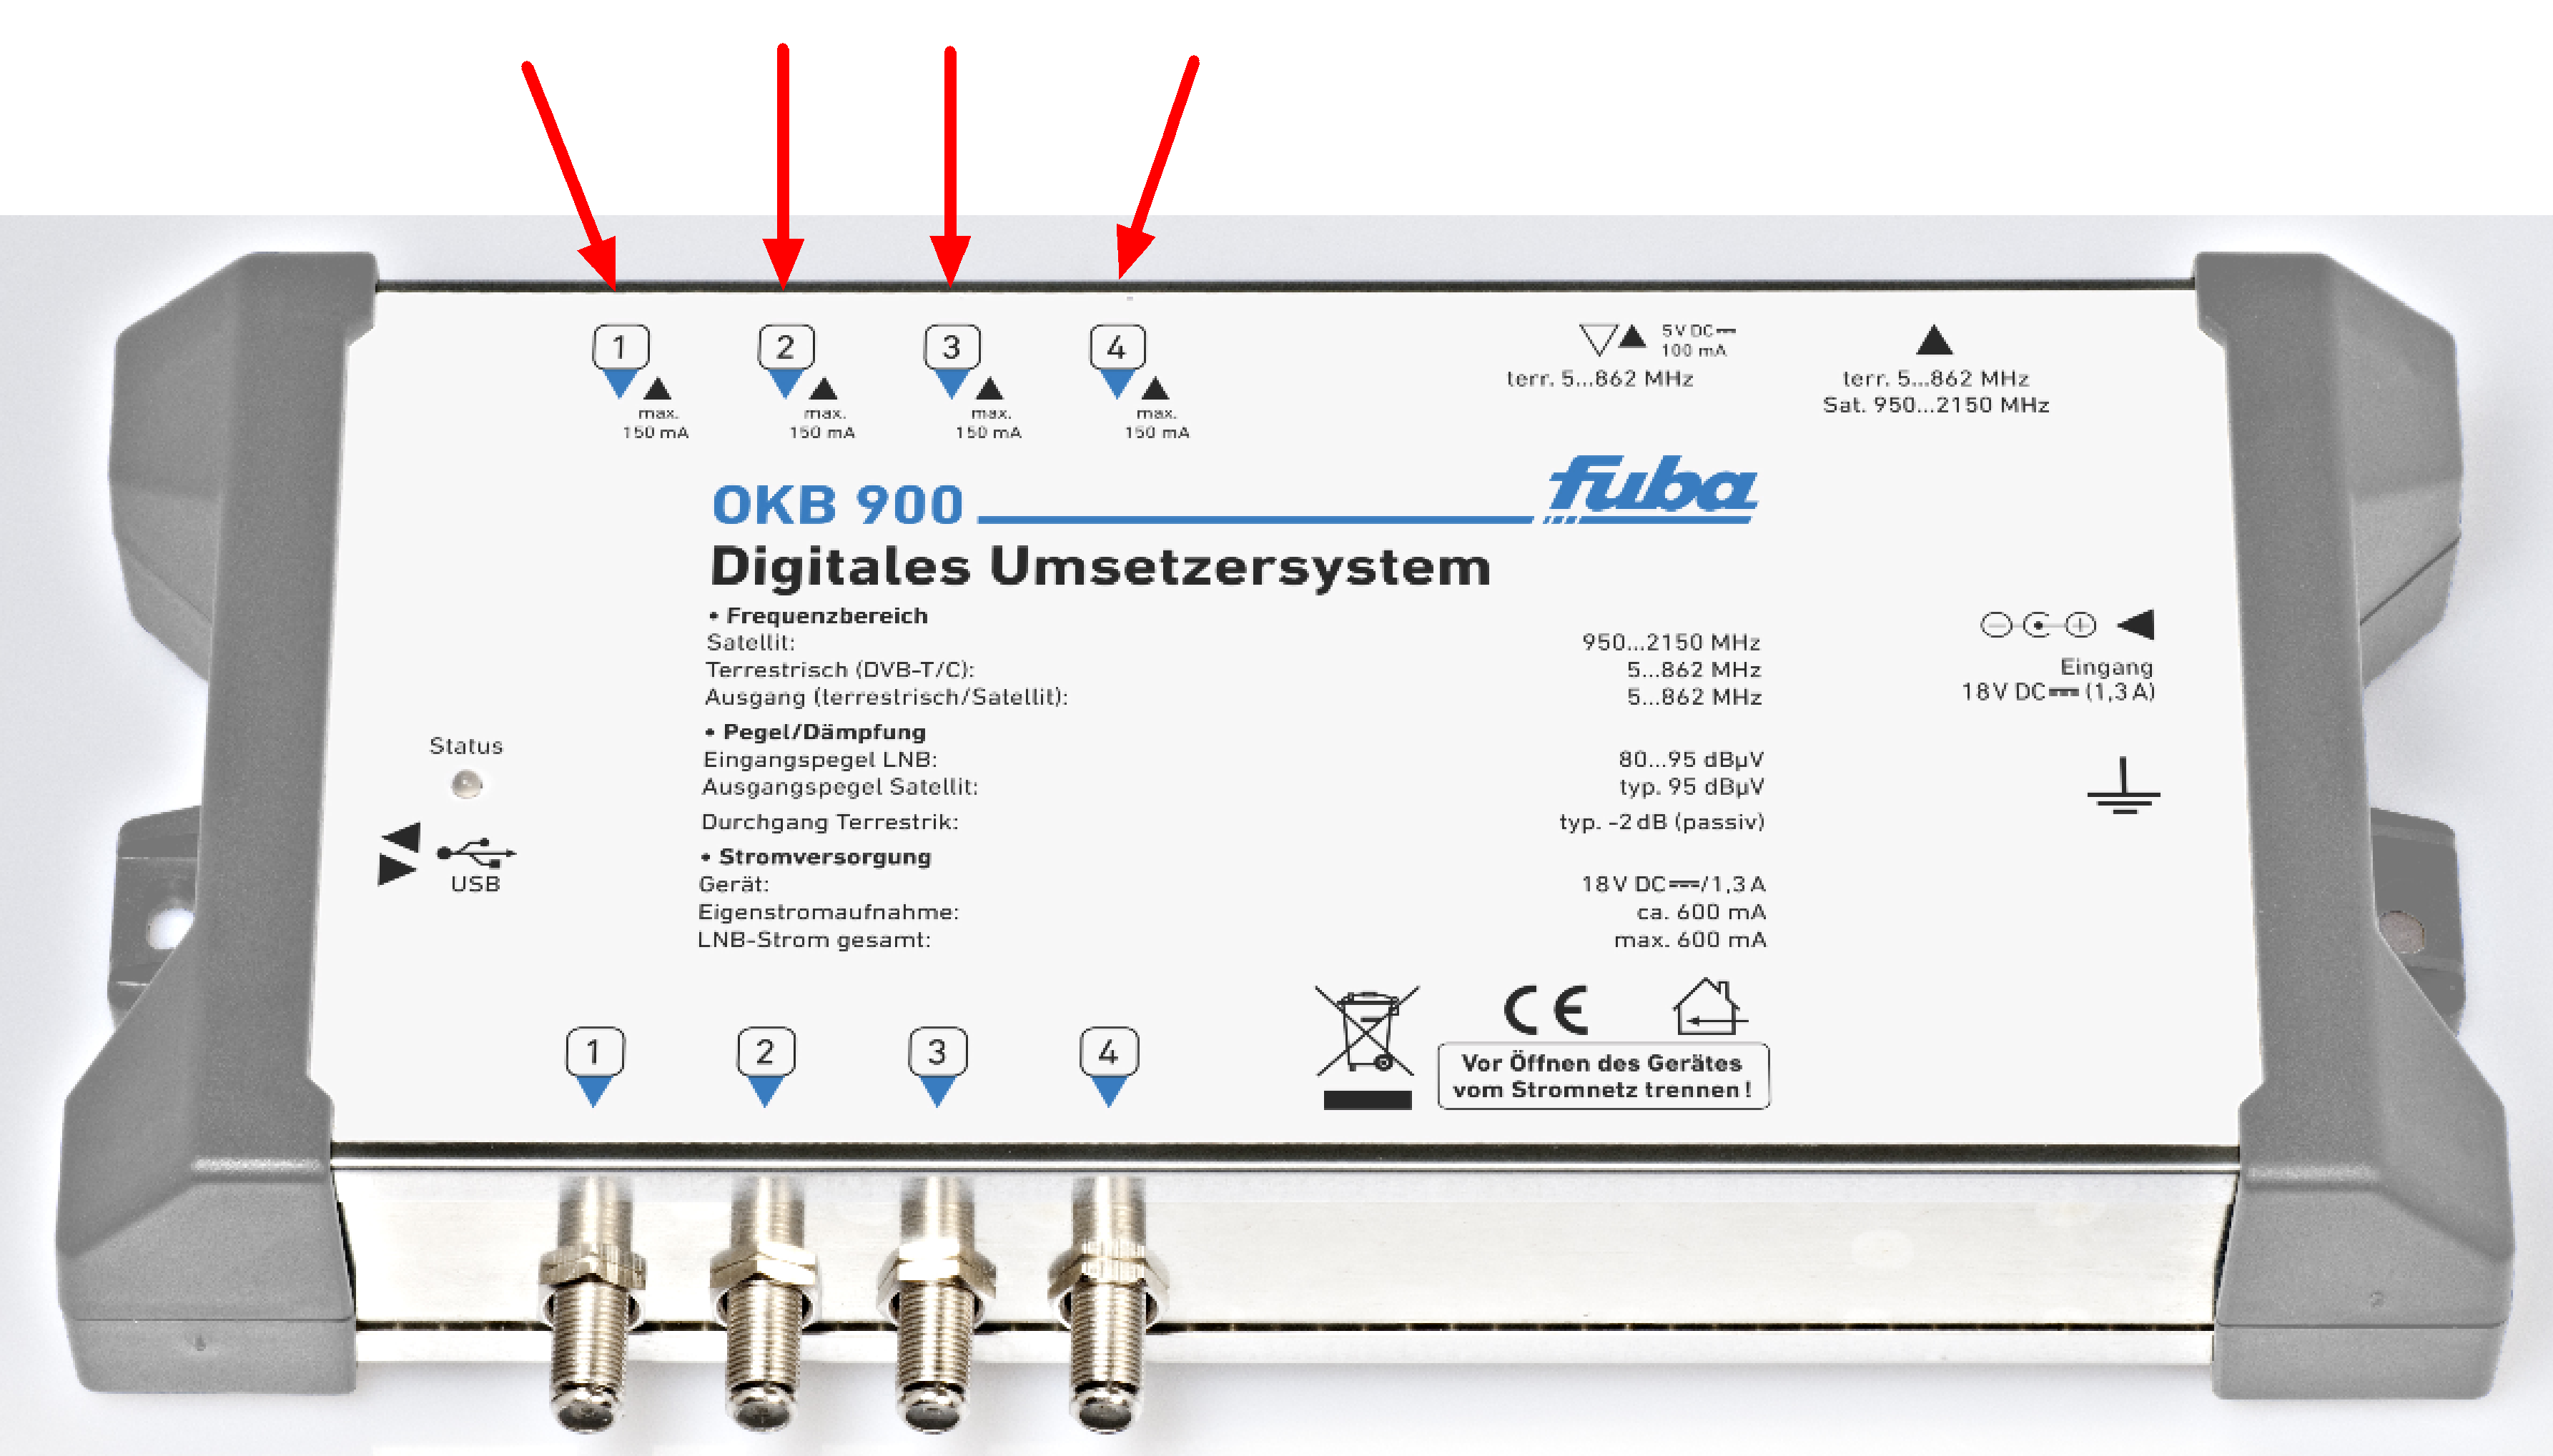 5 Erstinbetriebnahme ie OKB900 wird mit einer Vorkonfiguration ausgeliefert, die den sofortigen Empfang von 9 ASTRA-Transpondern ermöglicht.